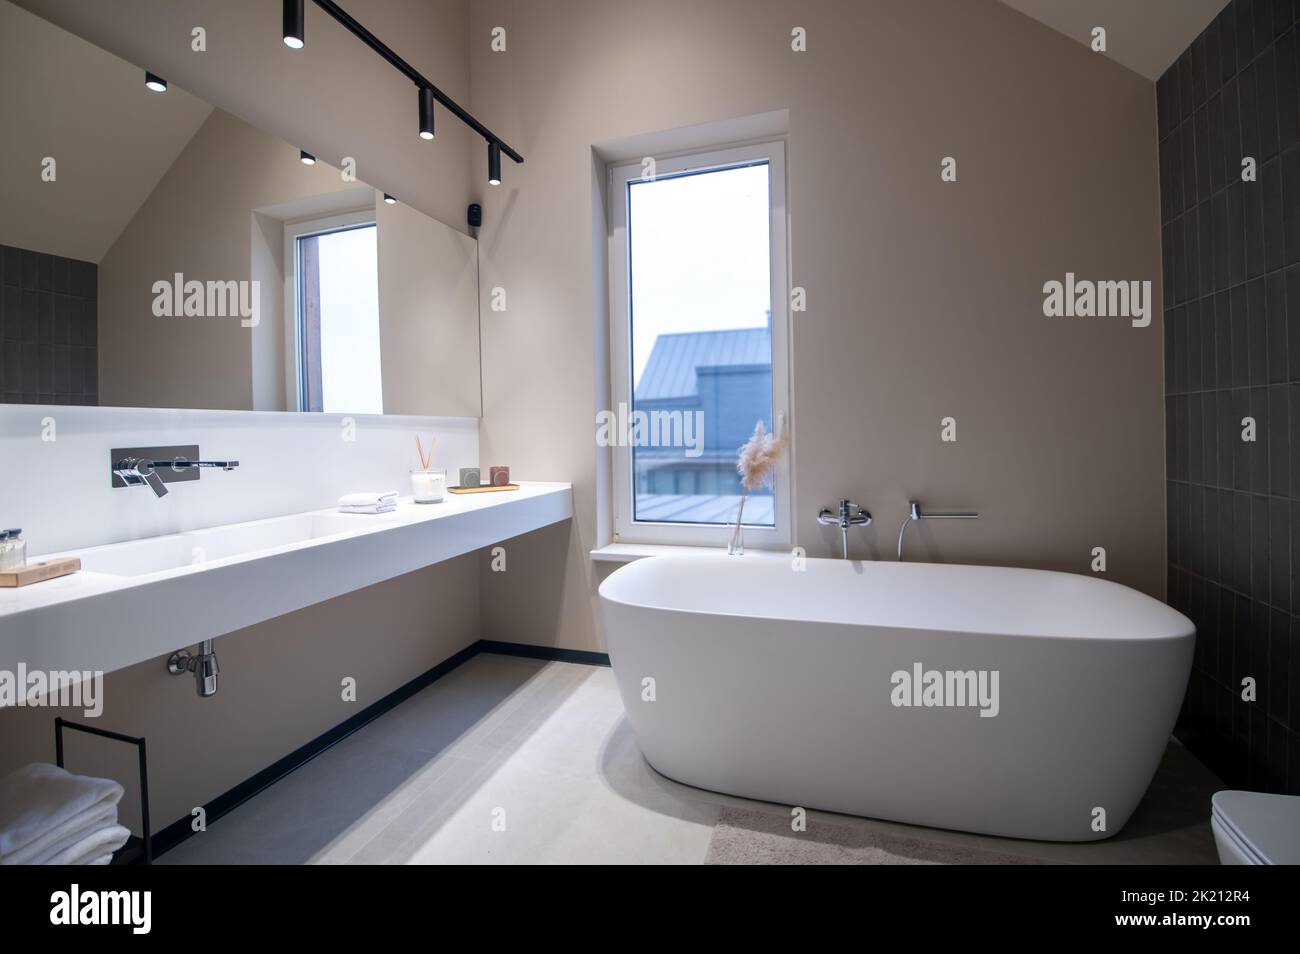 Salle de bains moderne avec toilettes propres et appliques murales LED Banque D'Images